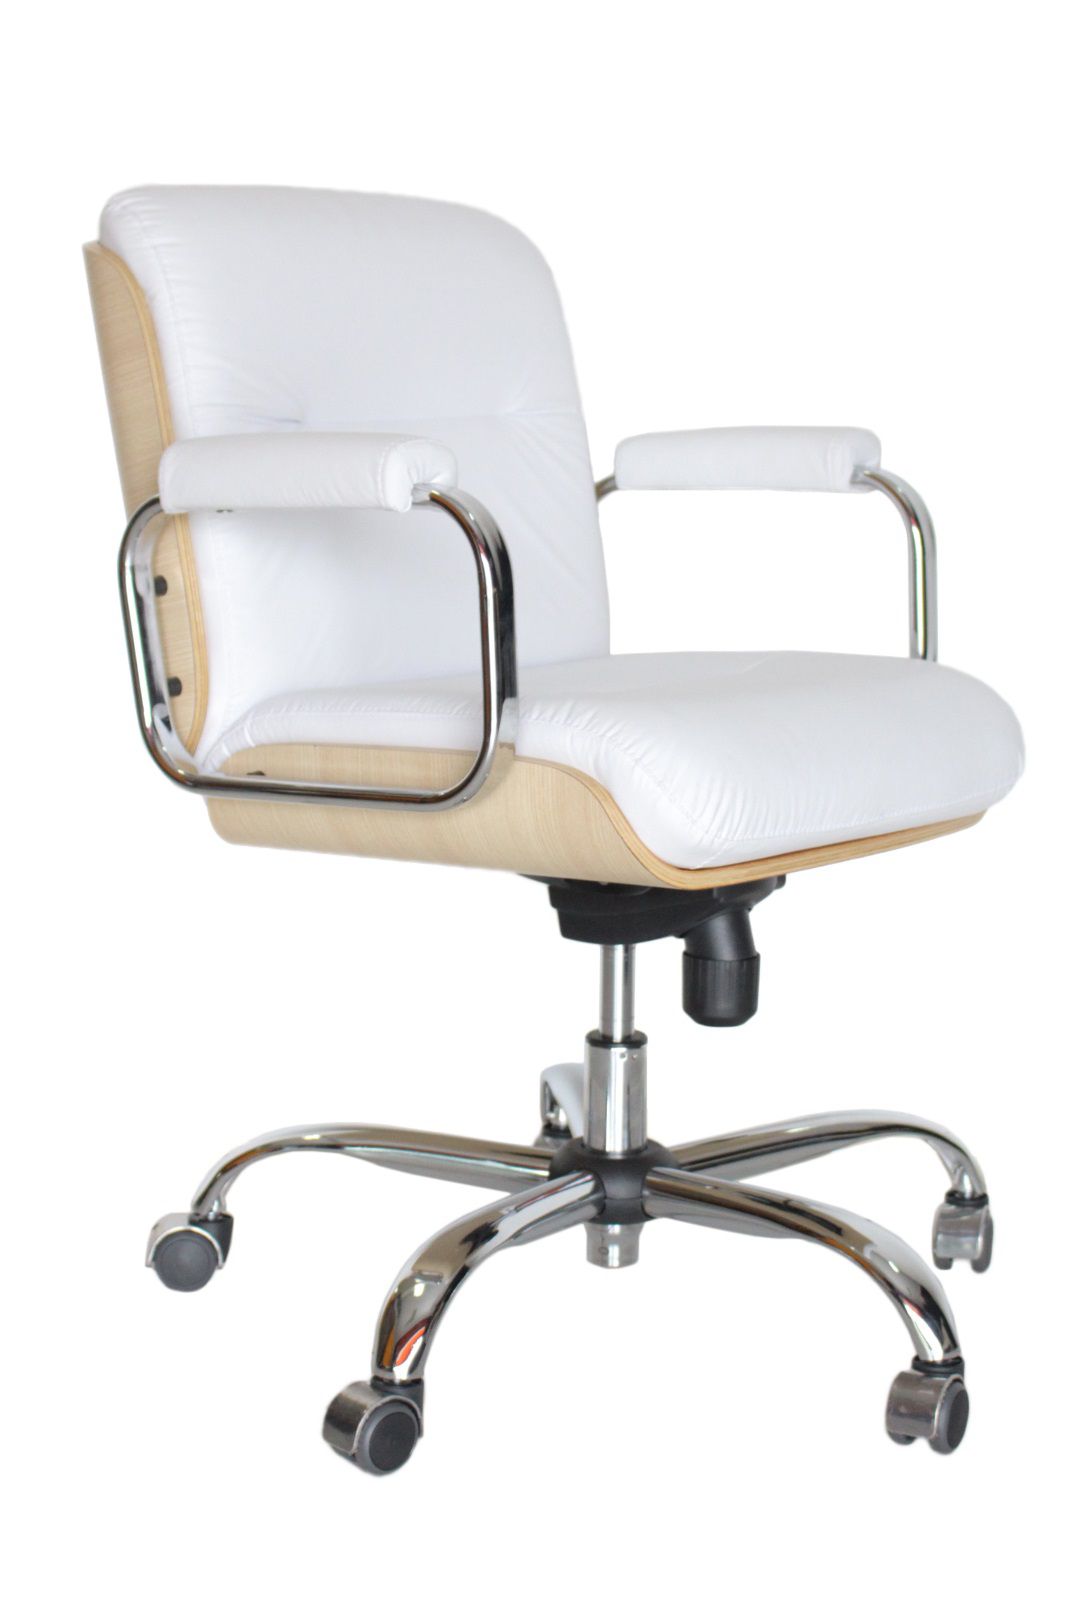 Cadeira Diretor giratória para escritório WD Branco/Cromado - RIKSTOK Aqui  você encontra tudo em móveis para o seu escritório!